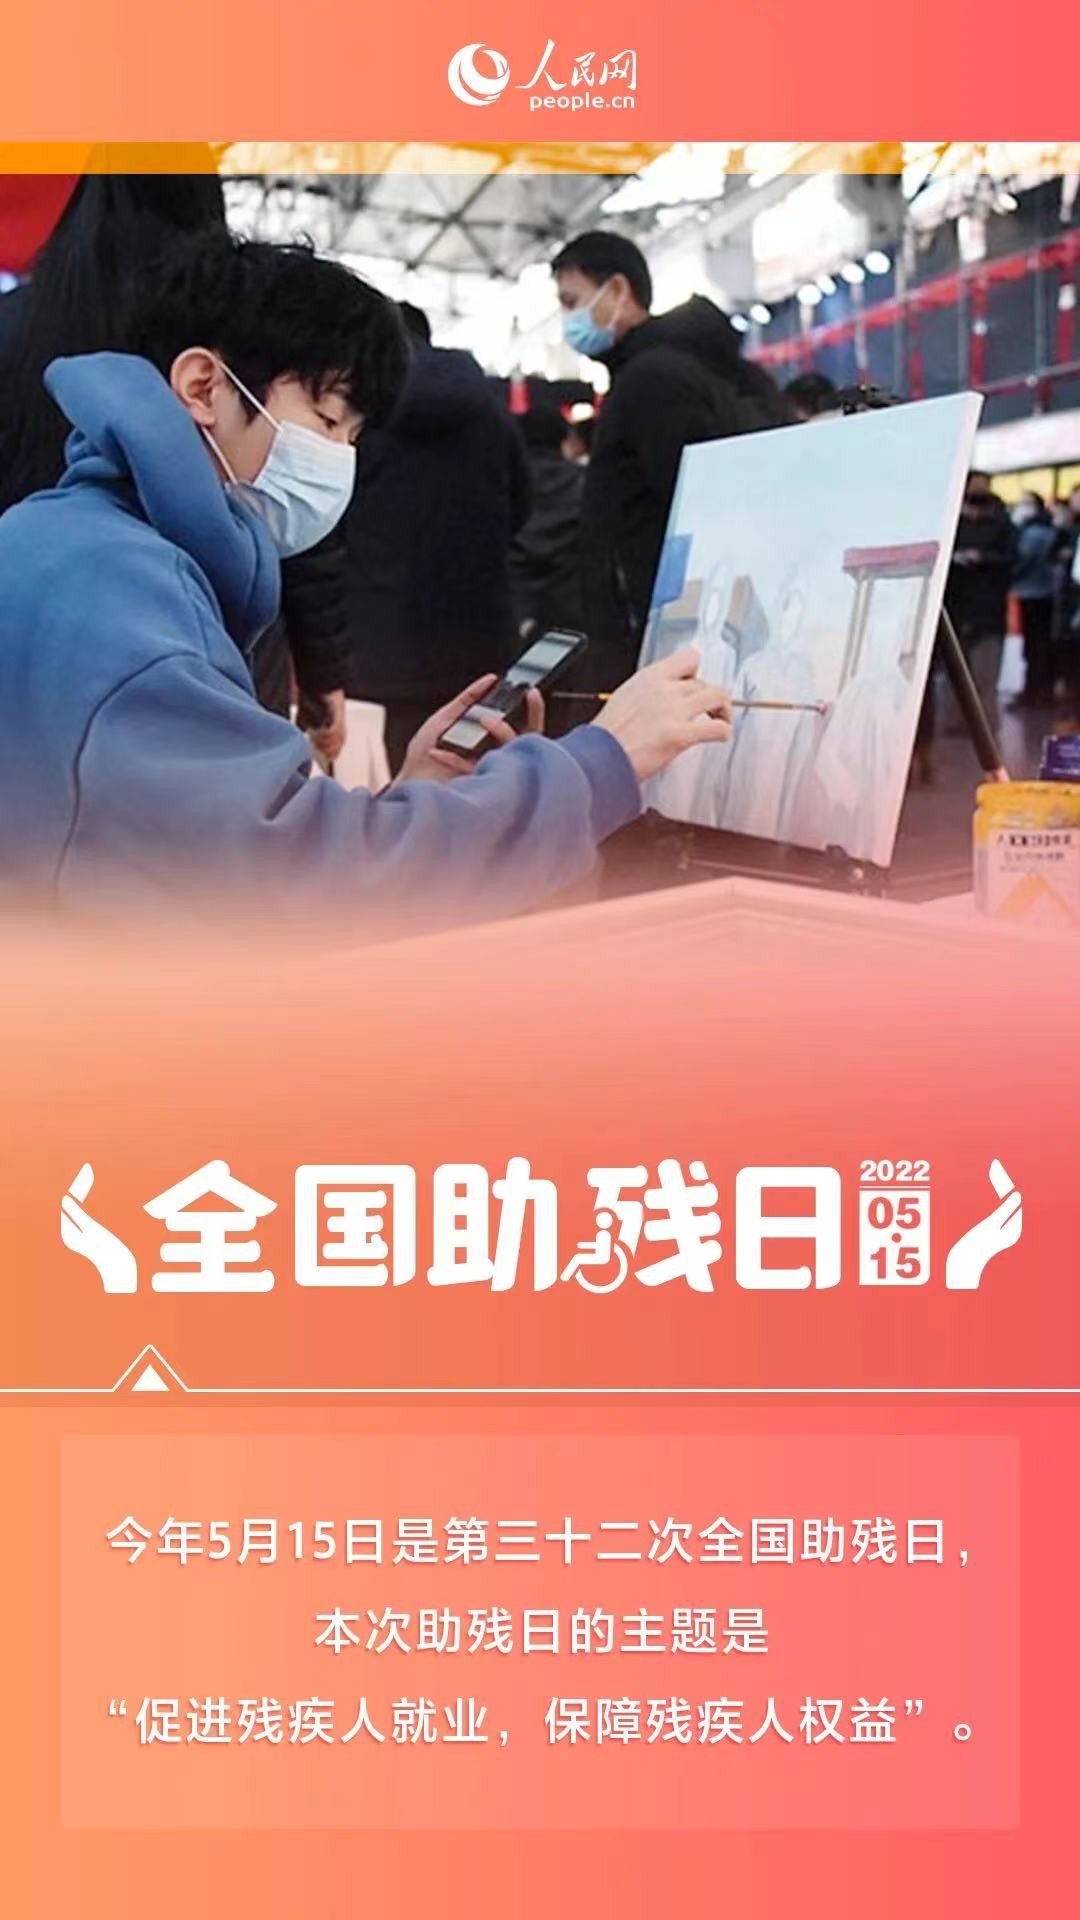 人民网全国助残日海报 people.com.cn National Day of Assistive Poster